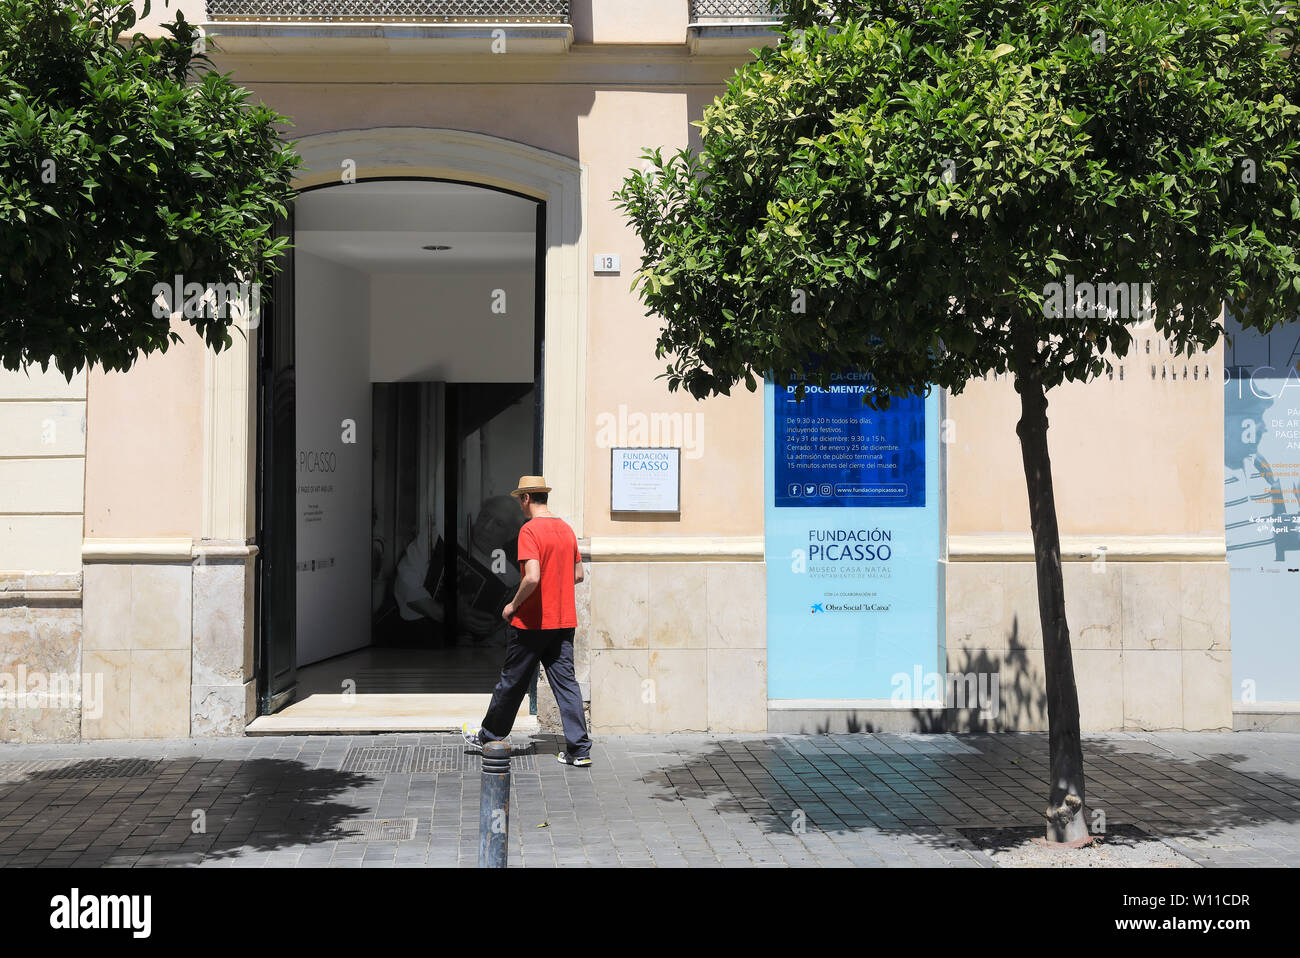 Le Musée Maison natale de Picasso, ou Casa Natal Picasso Malaga sur l'historique Plaza de la Merced, la ville de Malaga, Espagne Banque D'Images